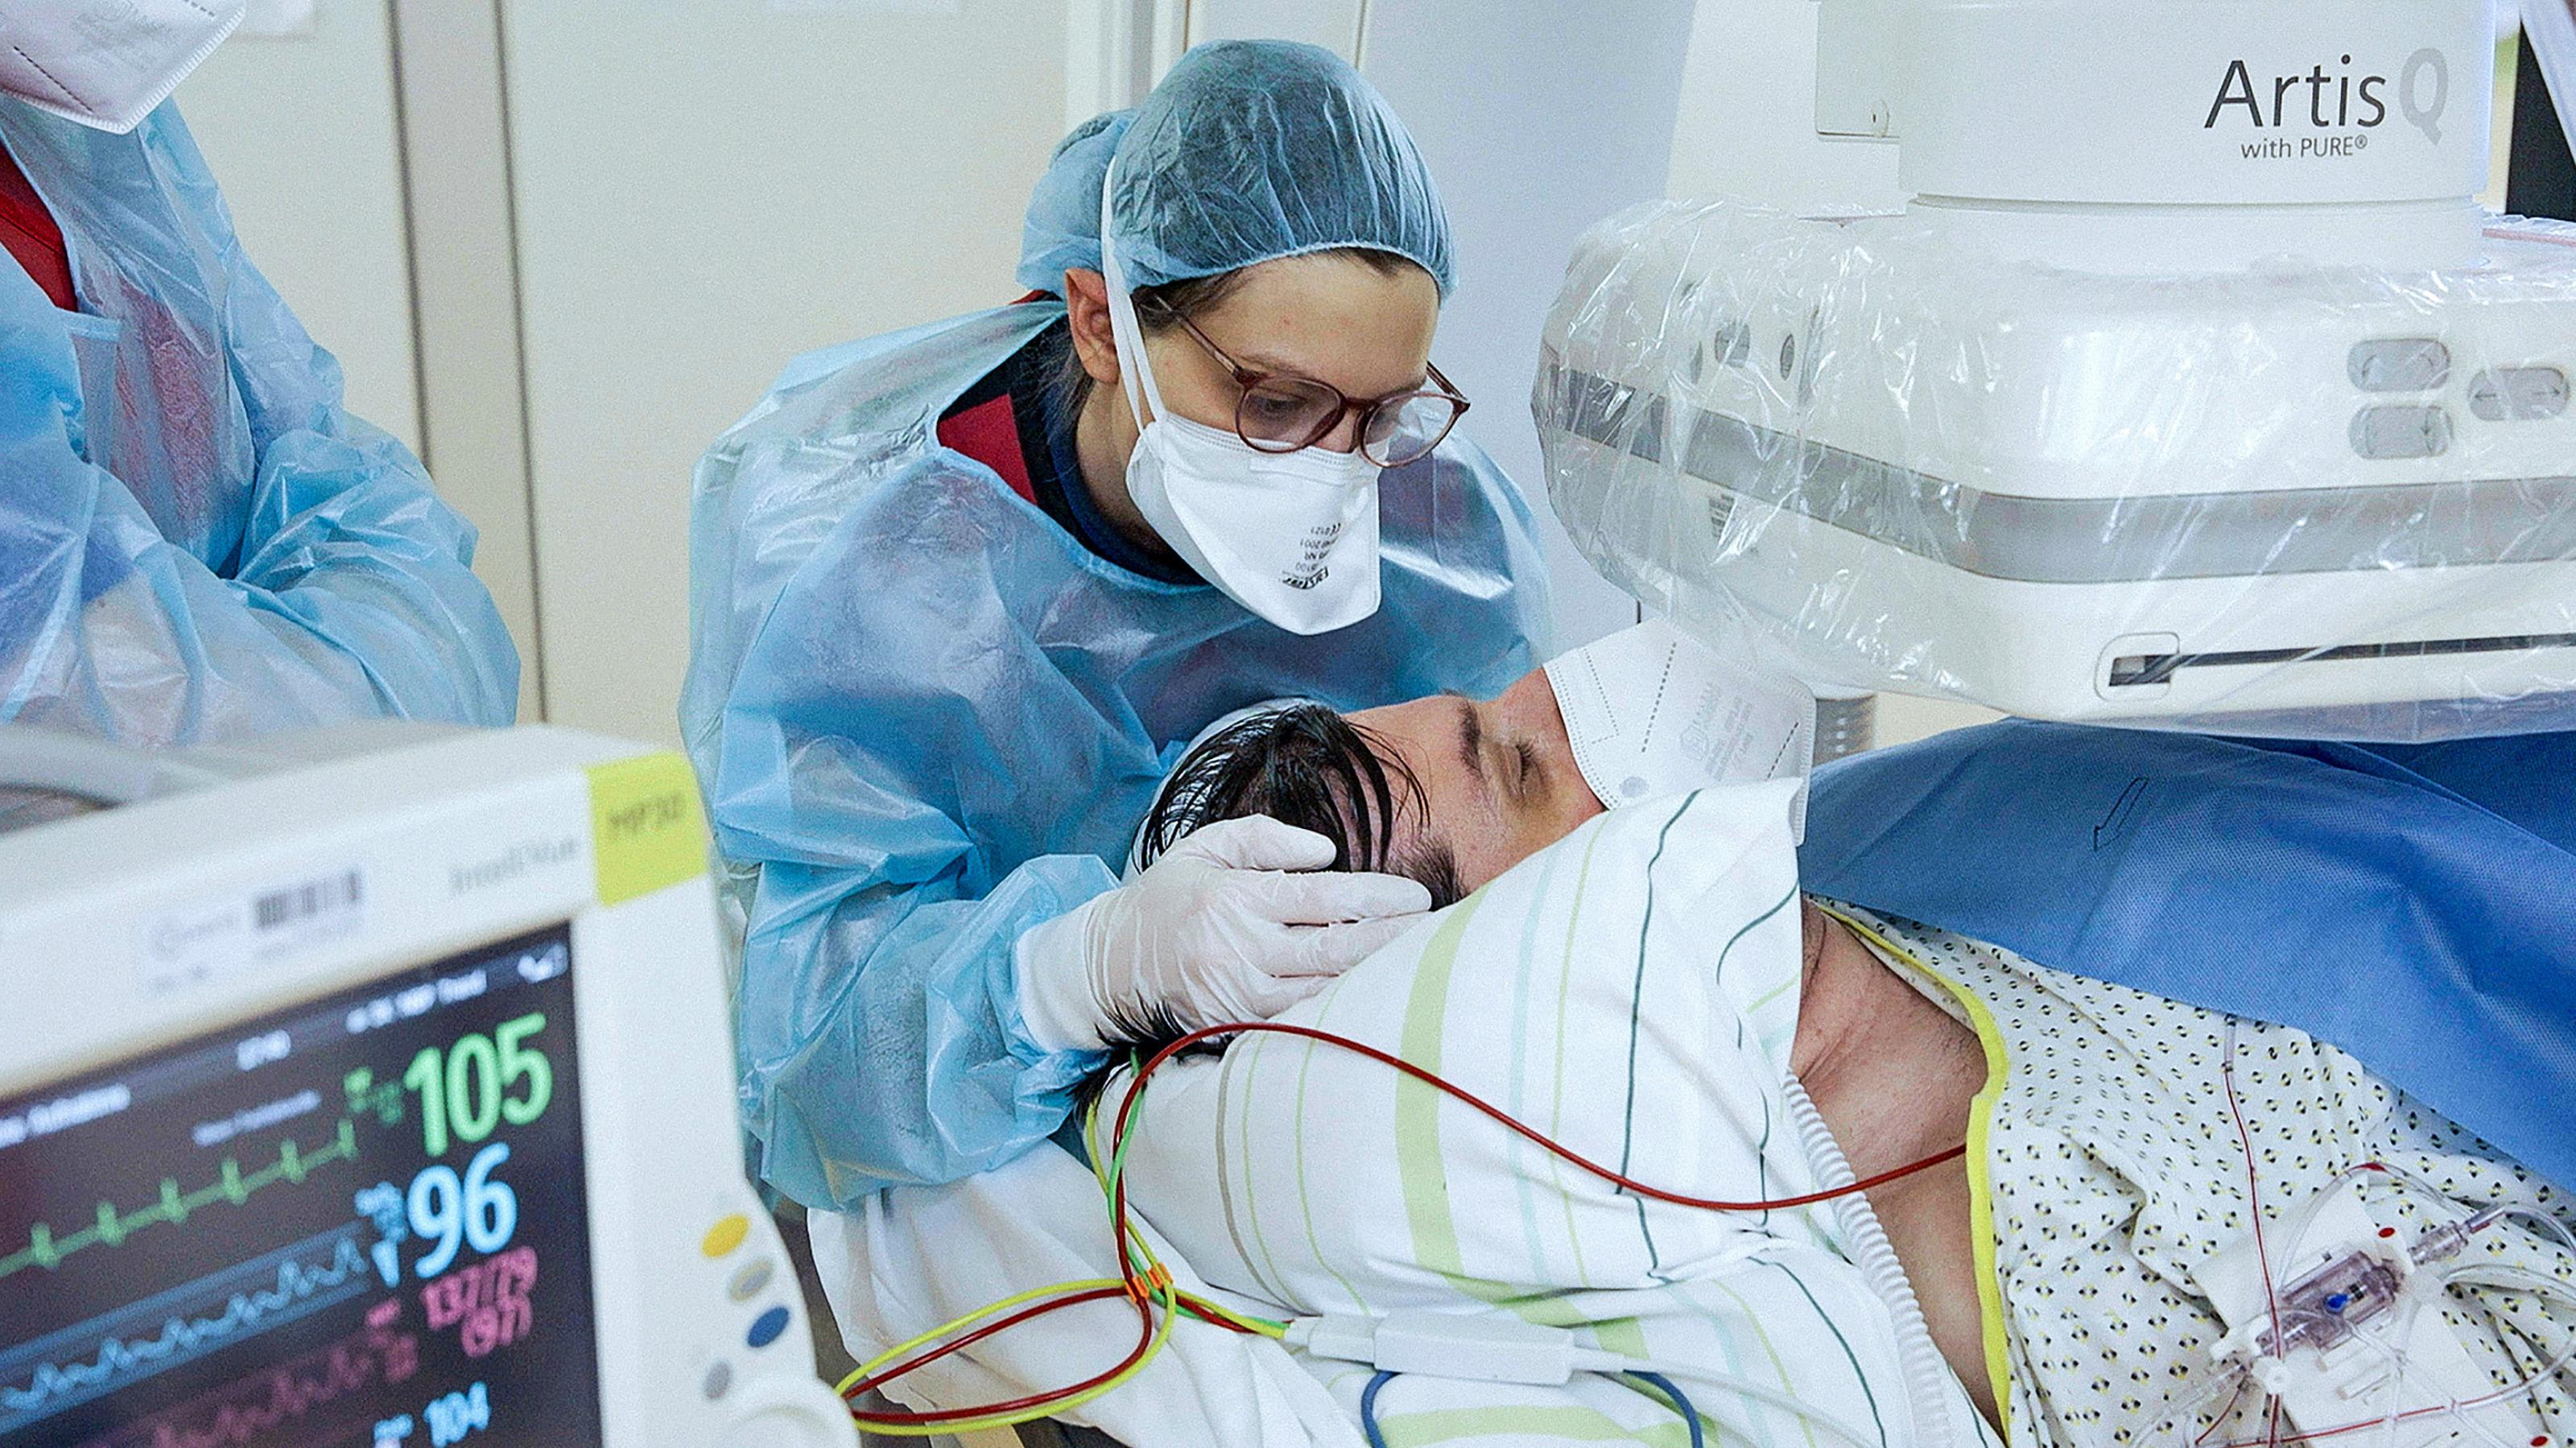 Intensivmedizinerin Sarah Kamel in Schutzkleidung und mit Schutzmaske bei einem Patiententransport, sie hält dabei den Kopf eines Patienten.